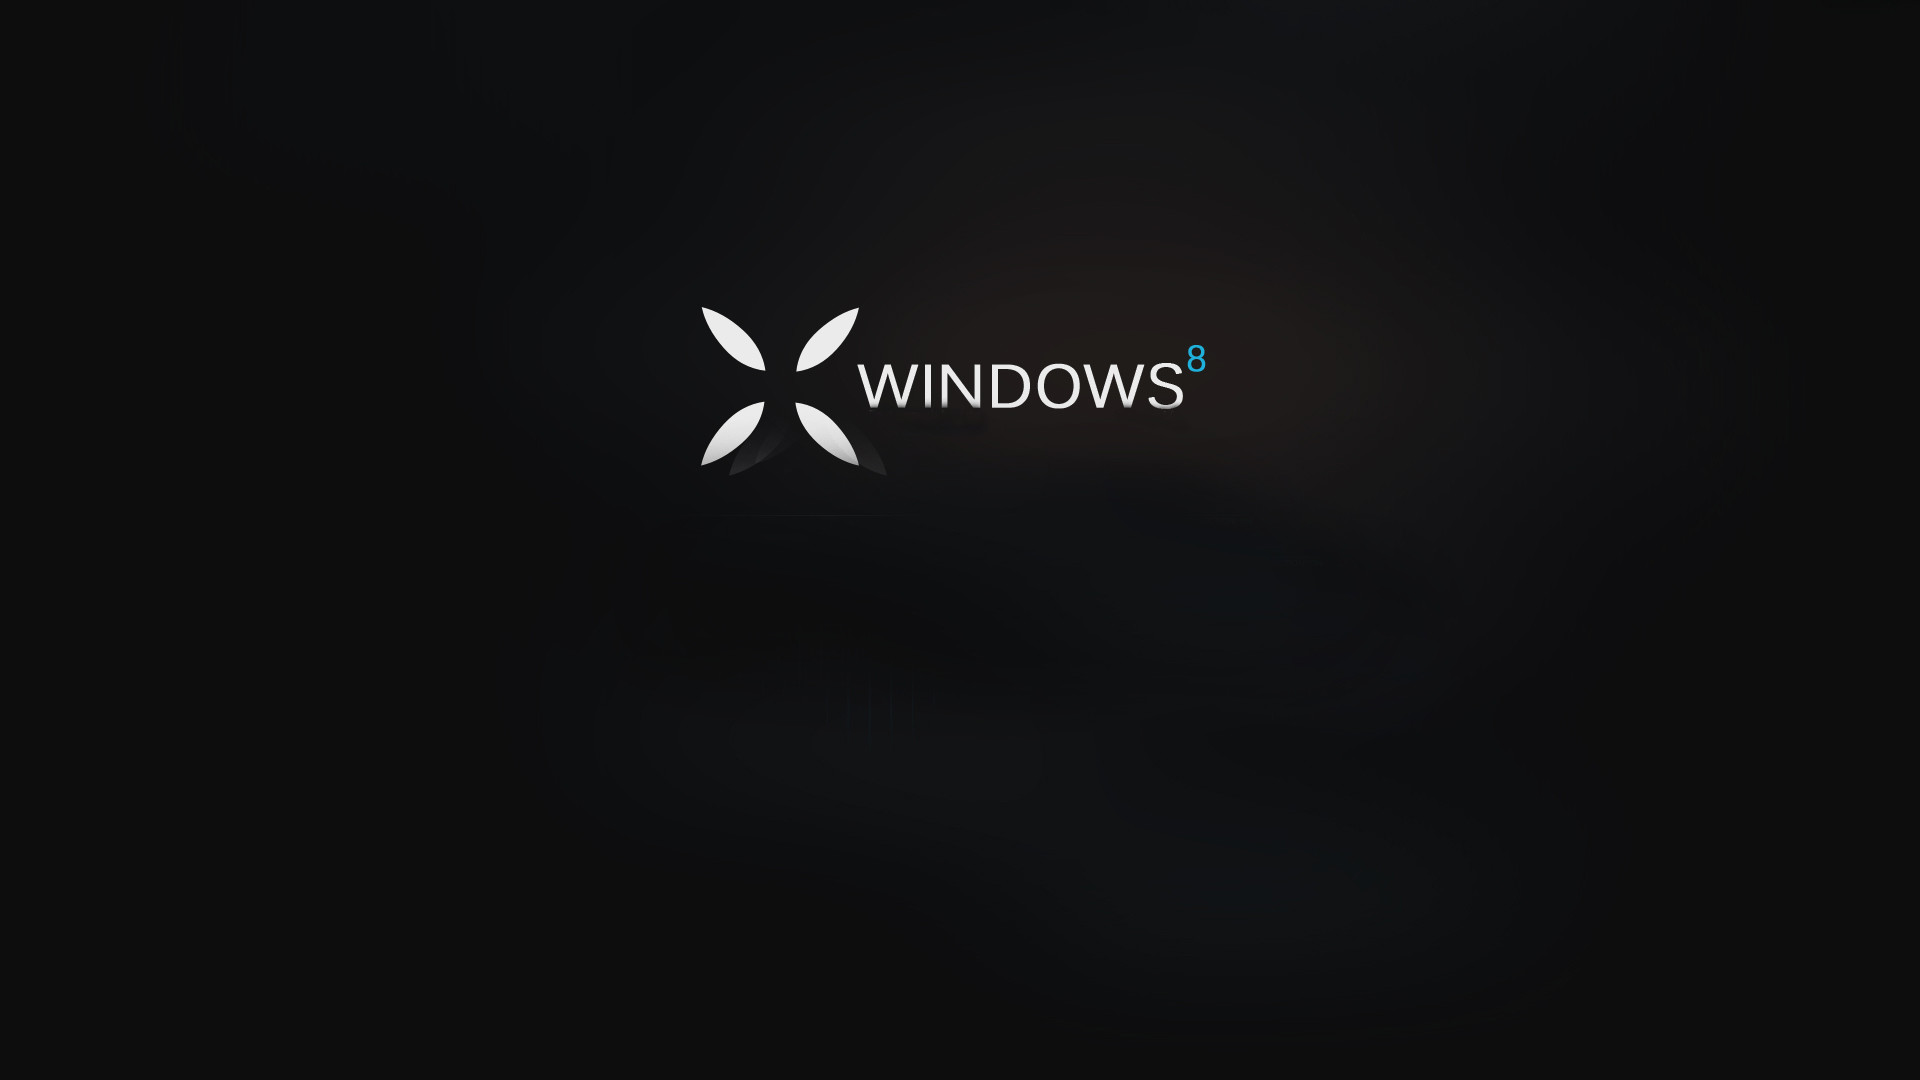 Windows 10 Desktop Is Black 27 Free Hd Wallpaper